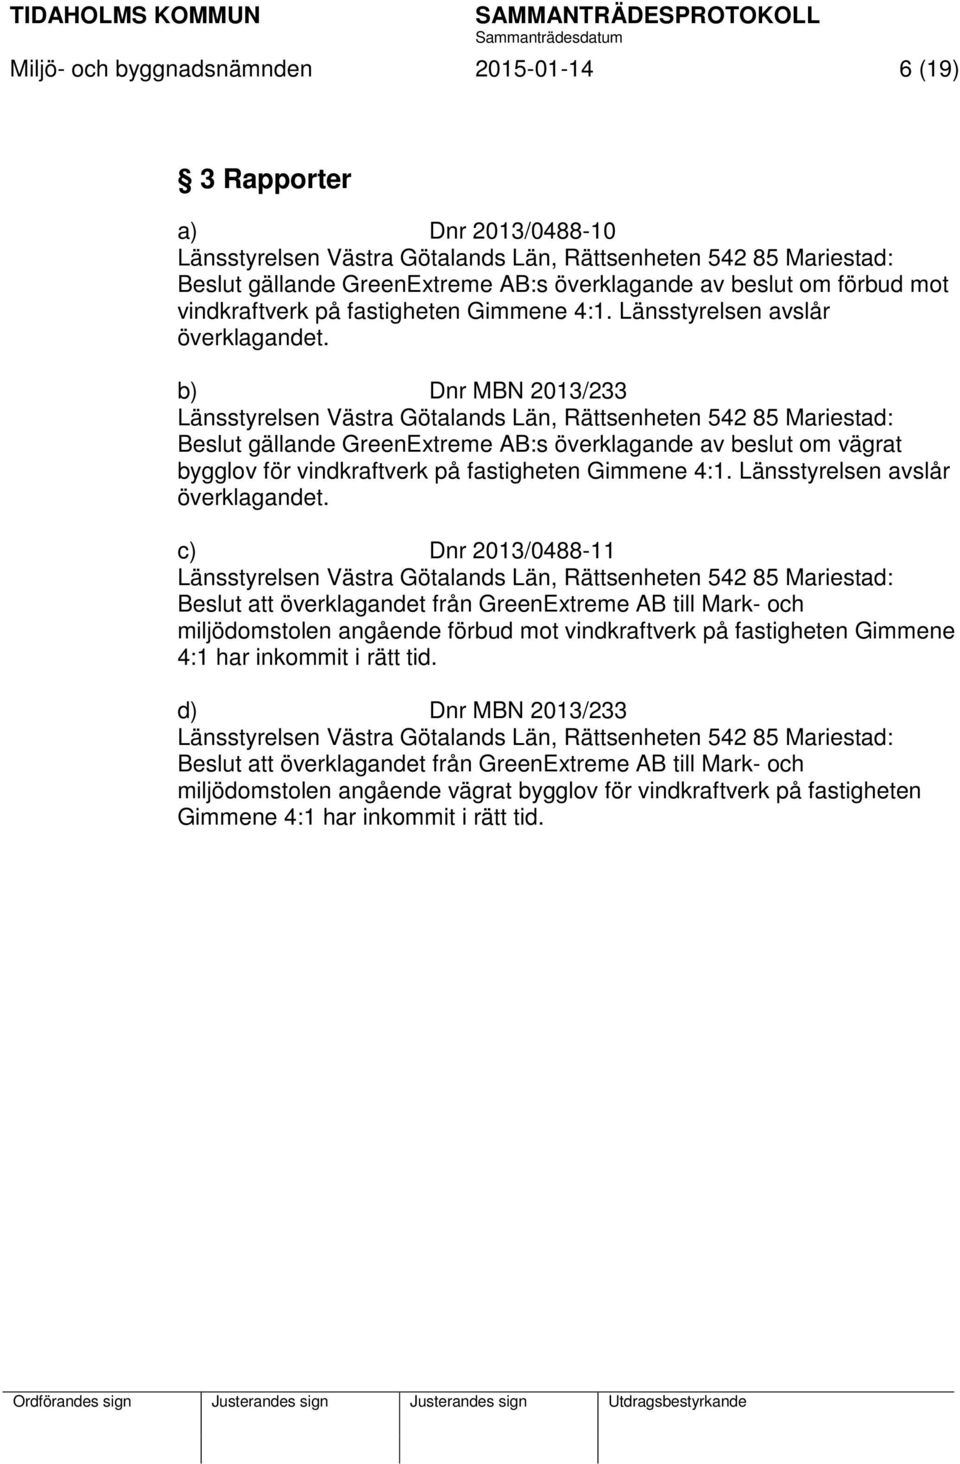 b) Dnr MBN 2013/233 Länsstyrelsen Västra Götalands Län, Rättsenheten 542 85 Mariestad: Beslut gällande GreenExtreme AB:s överklagande av beslut om vägrat bygglov för vindkraftverk på fastigheten